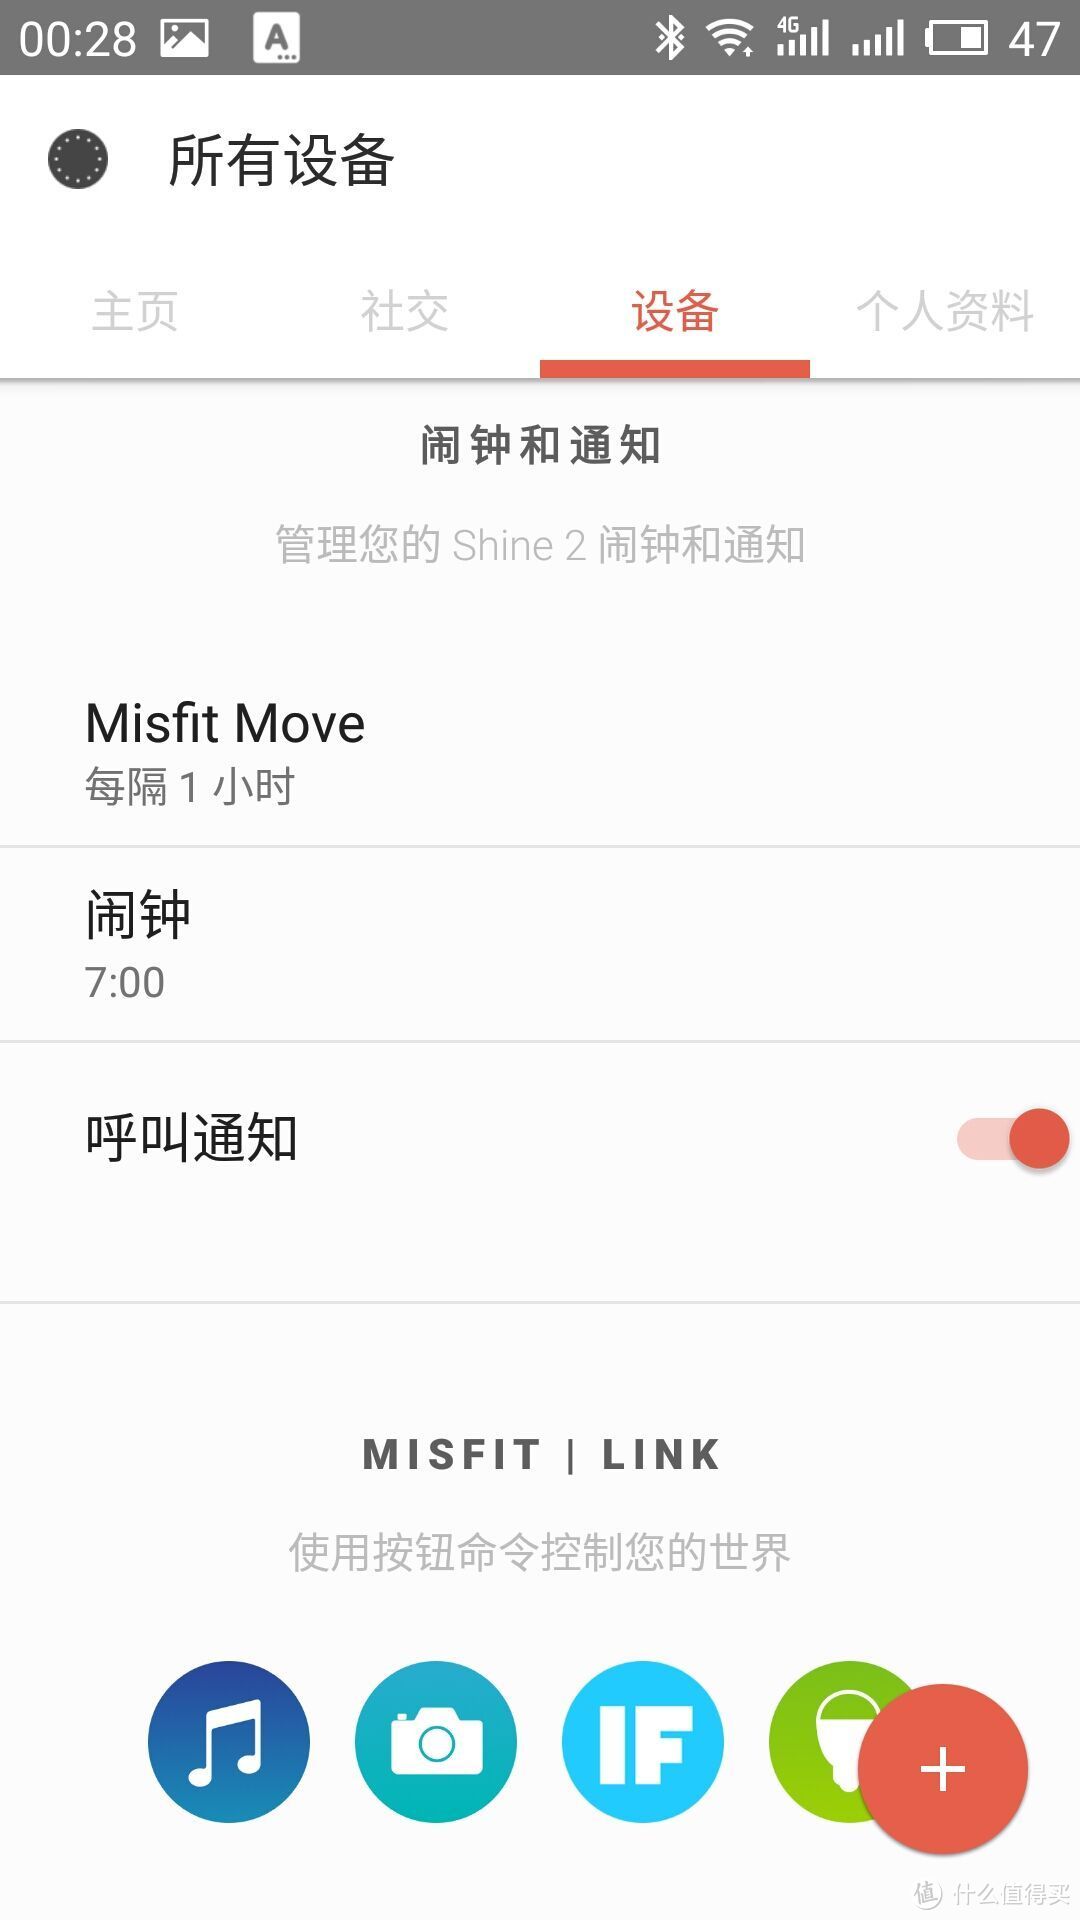 Misfit Shine2 彩灯智能手环非专业正经评测